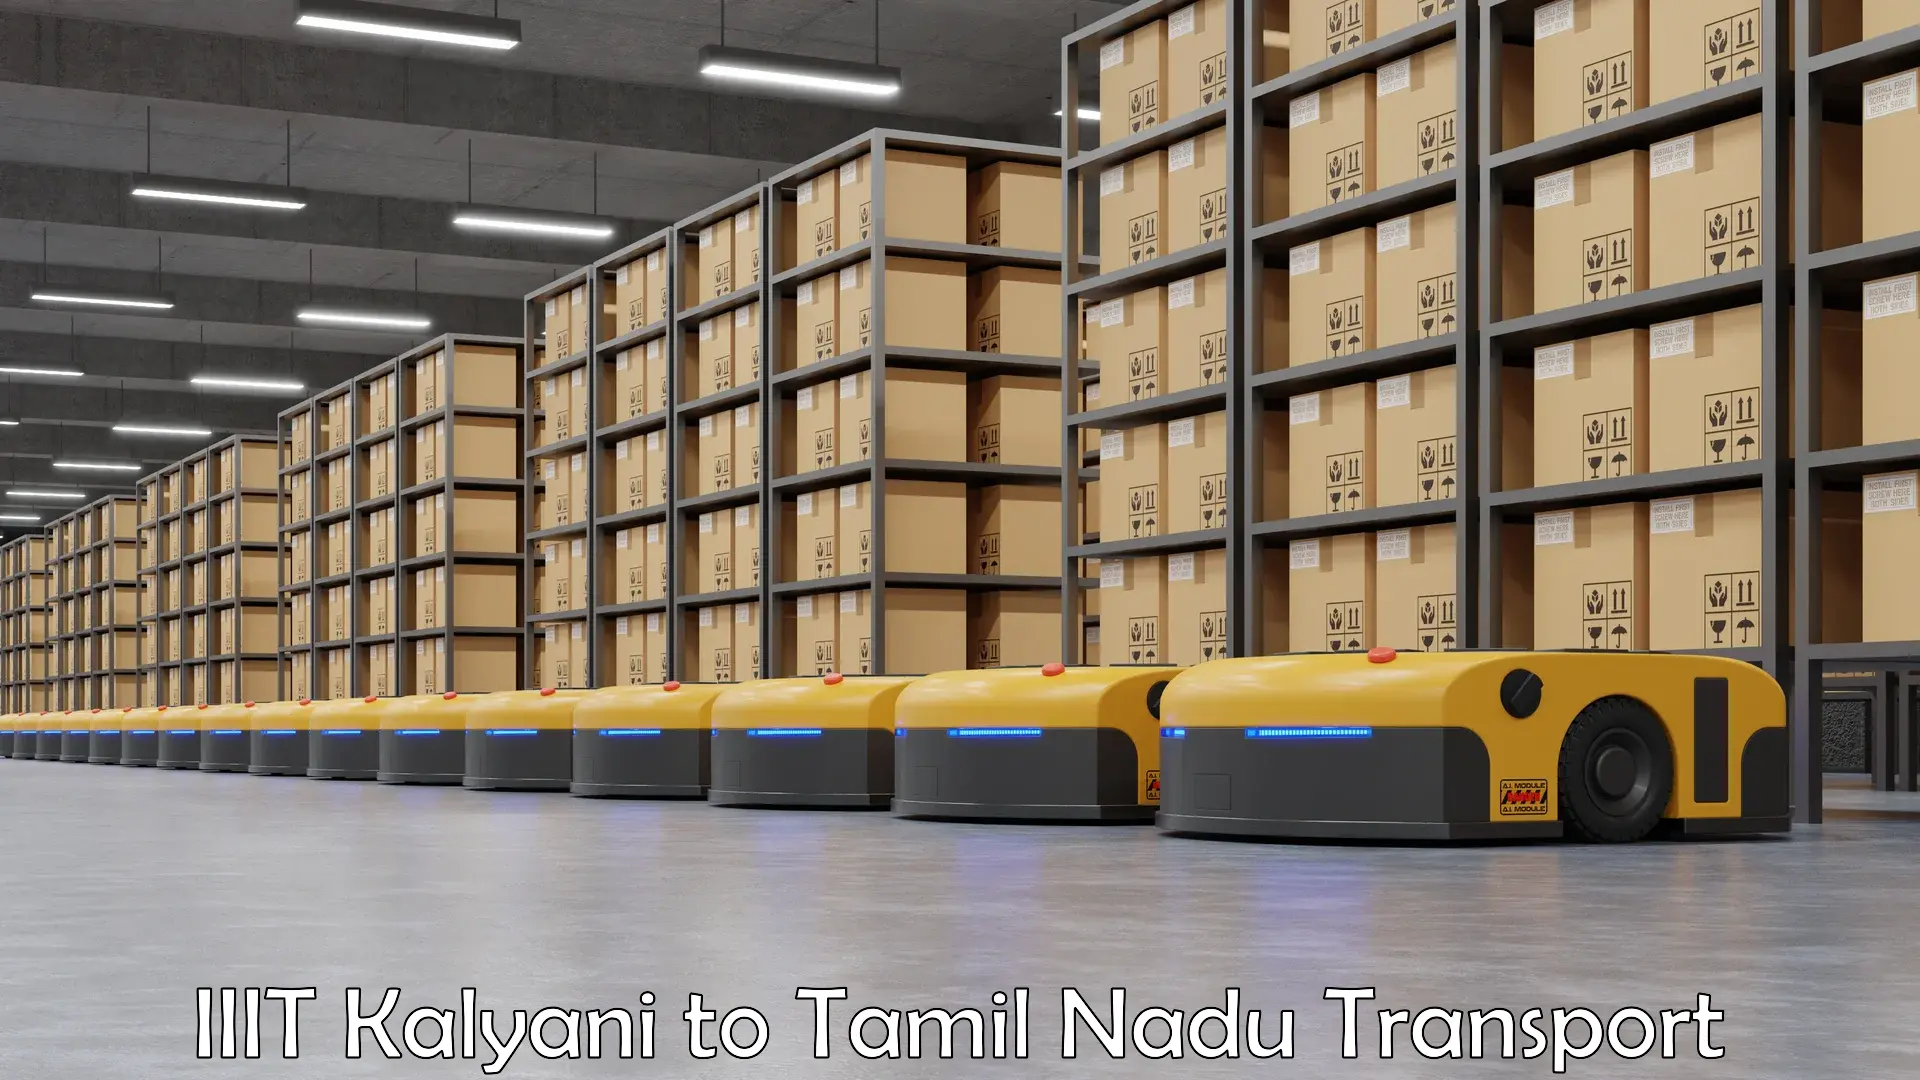 Truck transport companies in India IIIT Kalyani to Tiruvannamalai